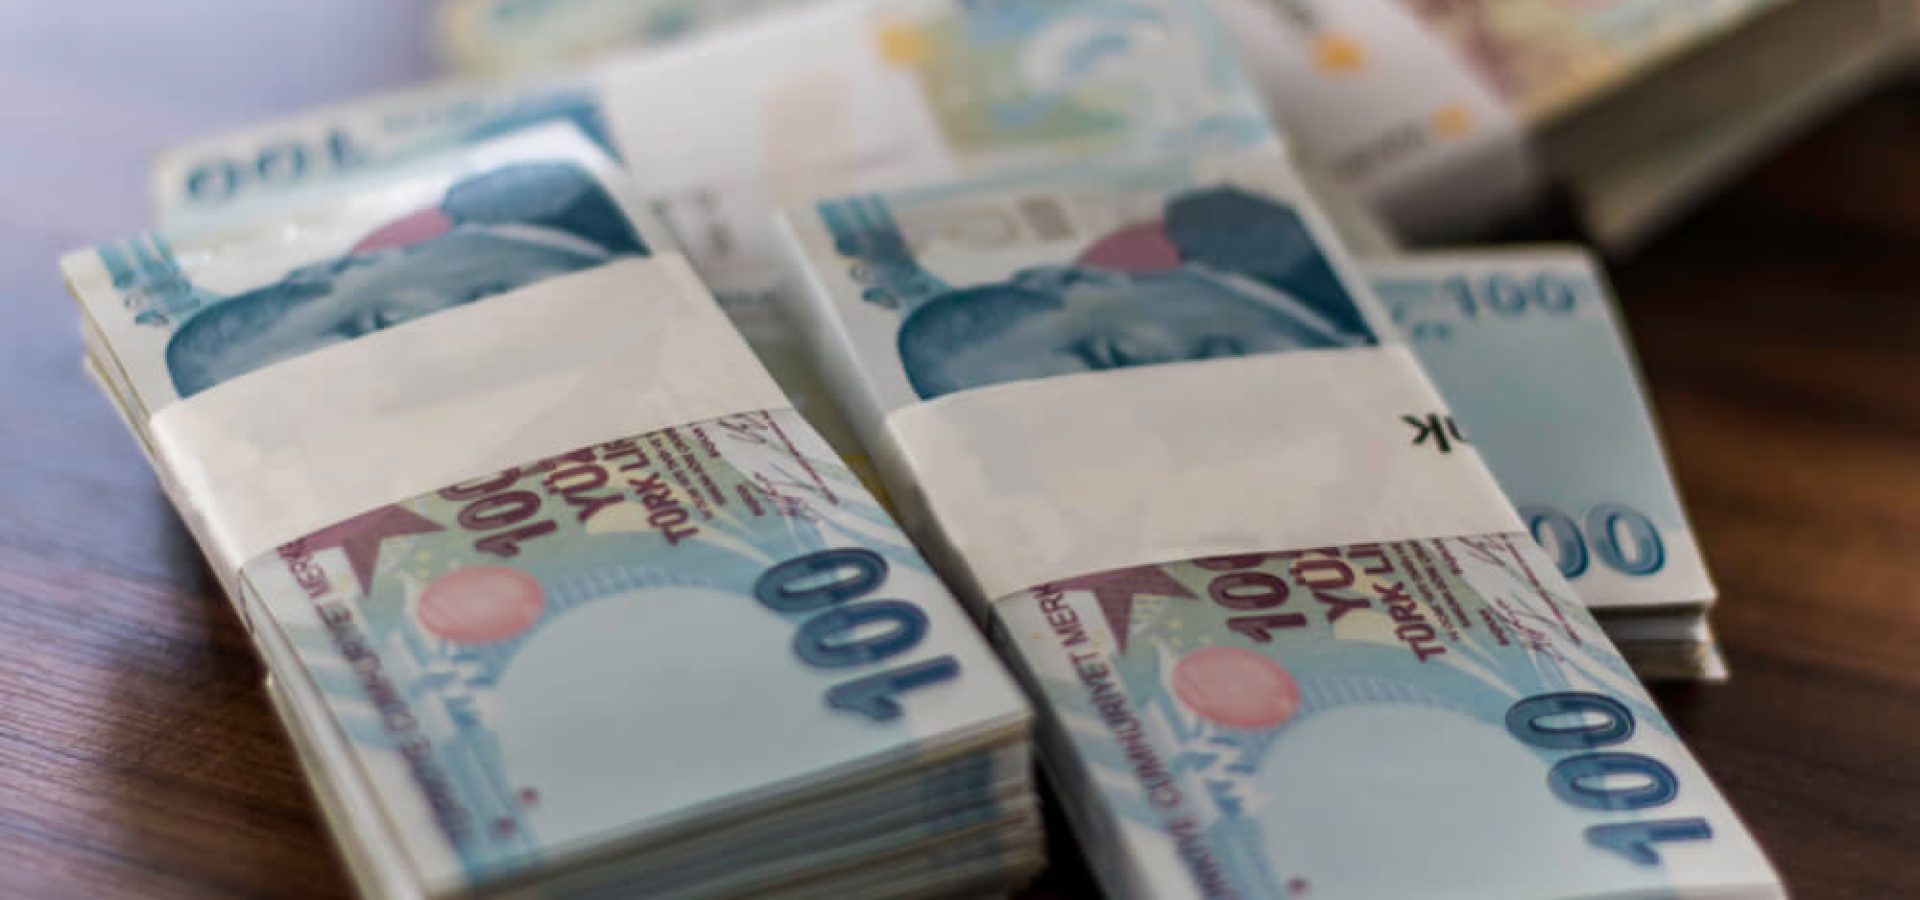 Turkish Lira money